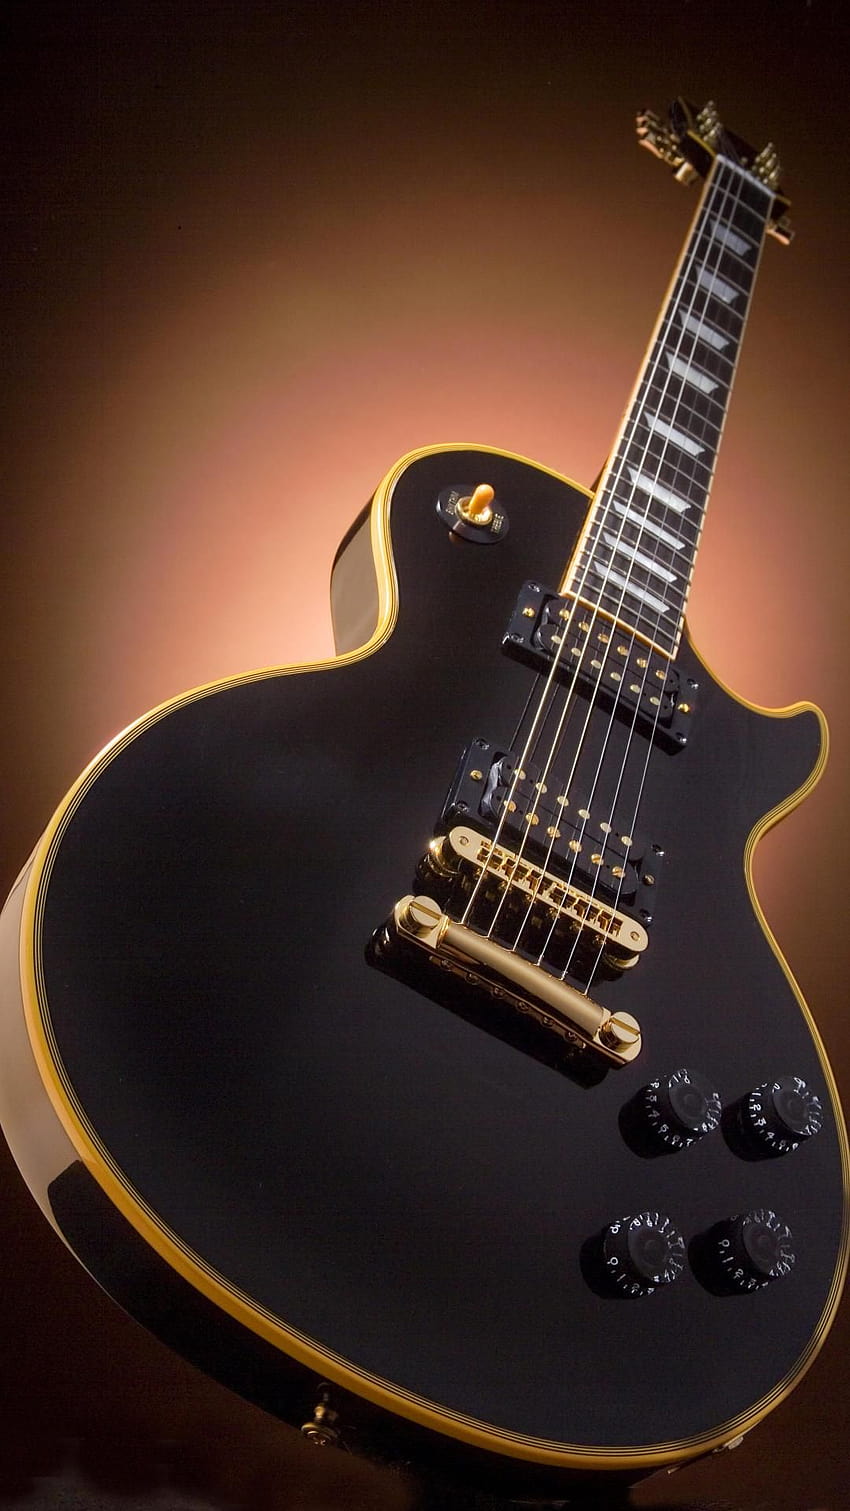 ScreenHeaven Gibson Les Paul gitar dan, telepon gitar penuh wallpaper ponsel HD